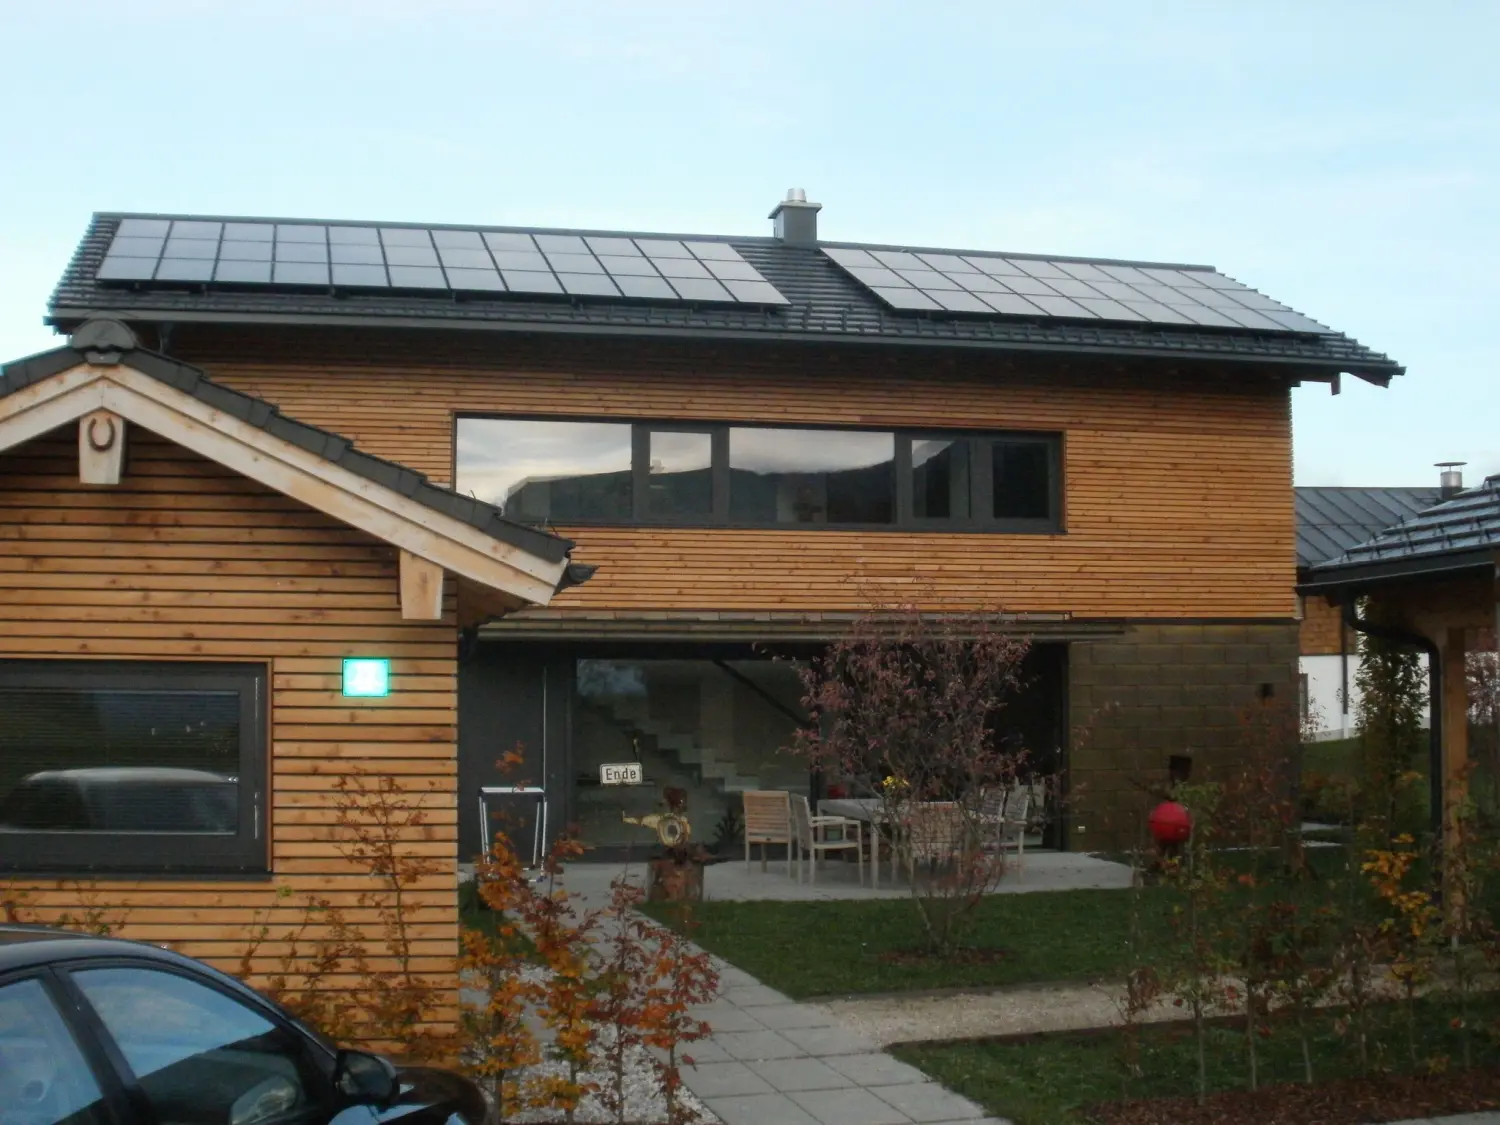 Solarprojekte von Priental Energy Systems